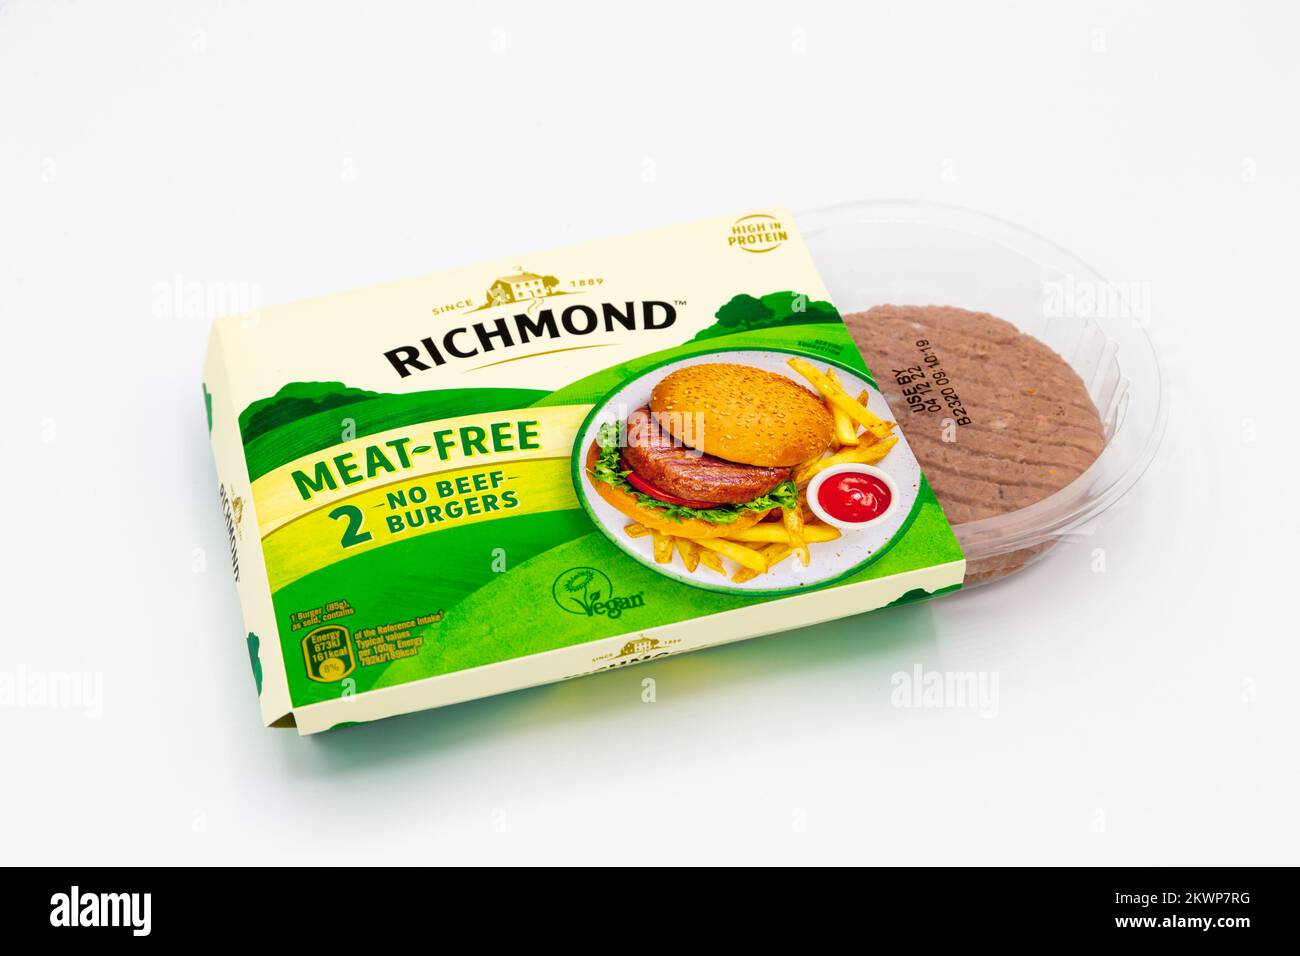 Hamburgers sans viande Richmond, hamburgers végétaliens, à base d'usine, royaume-uni Banque D'Images